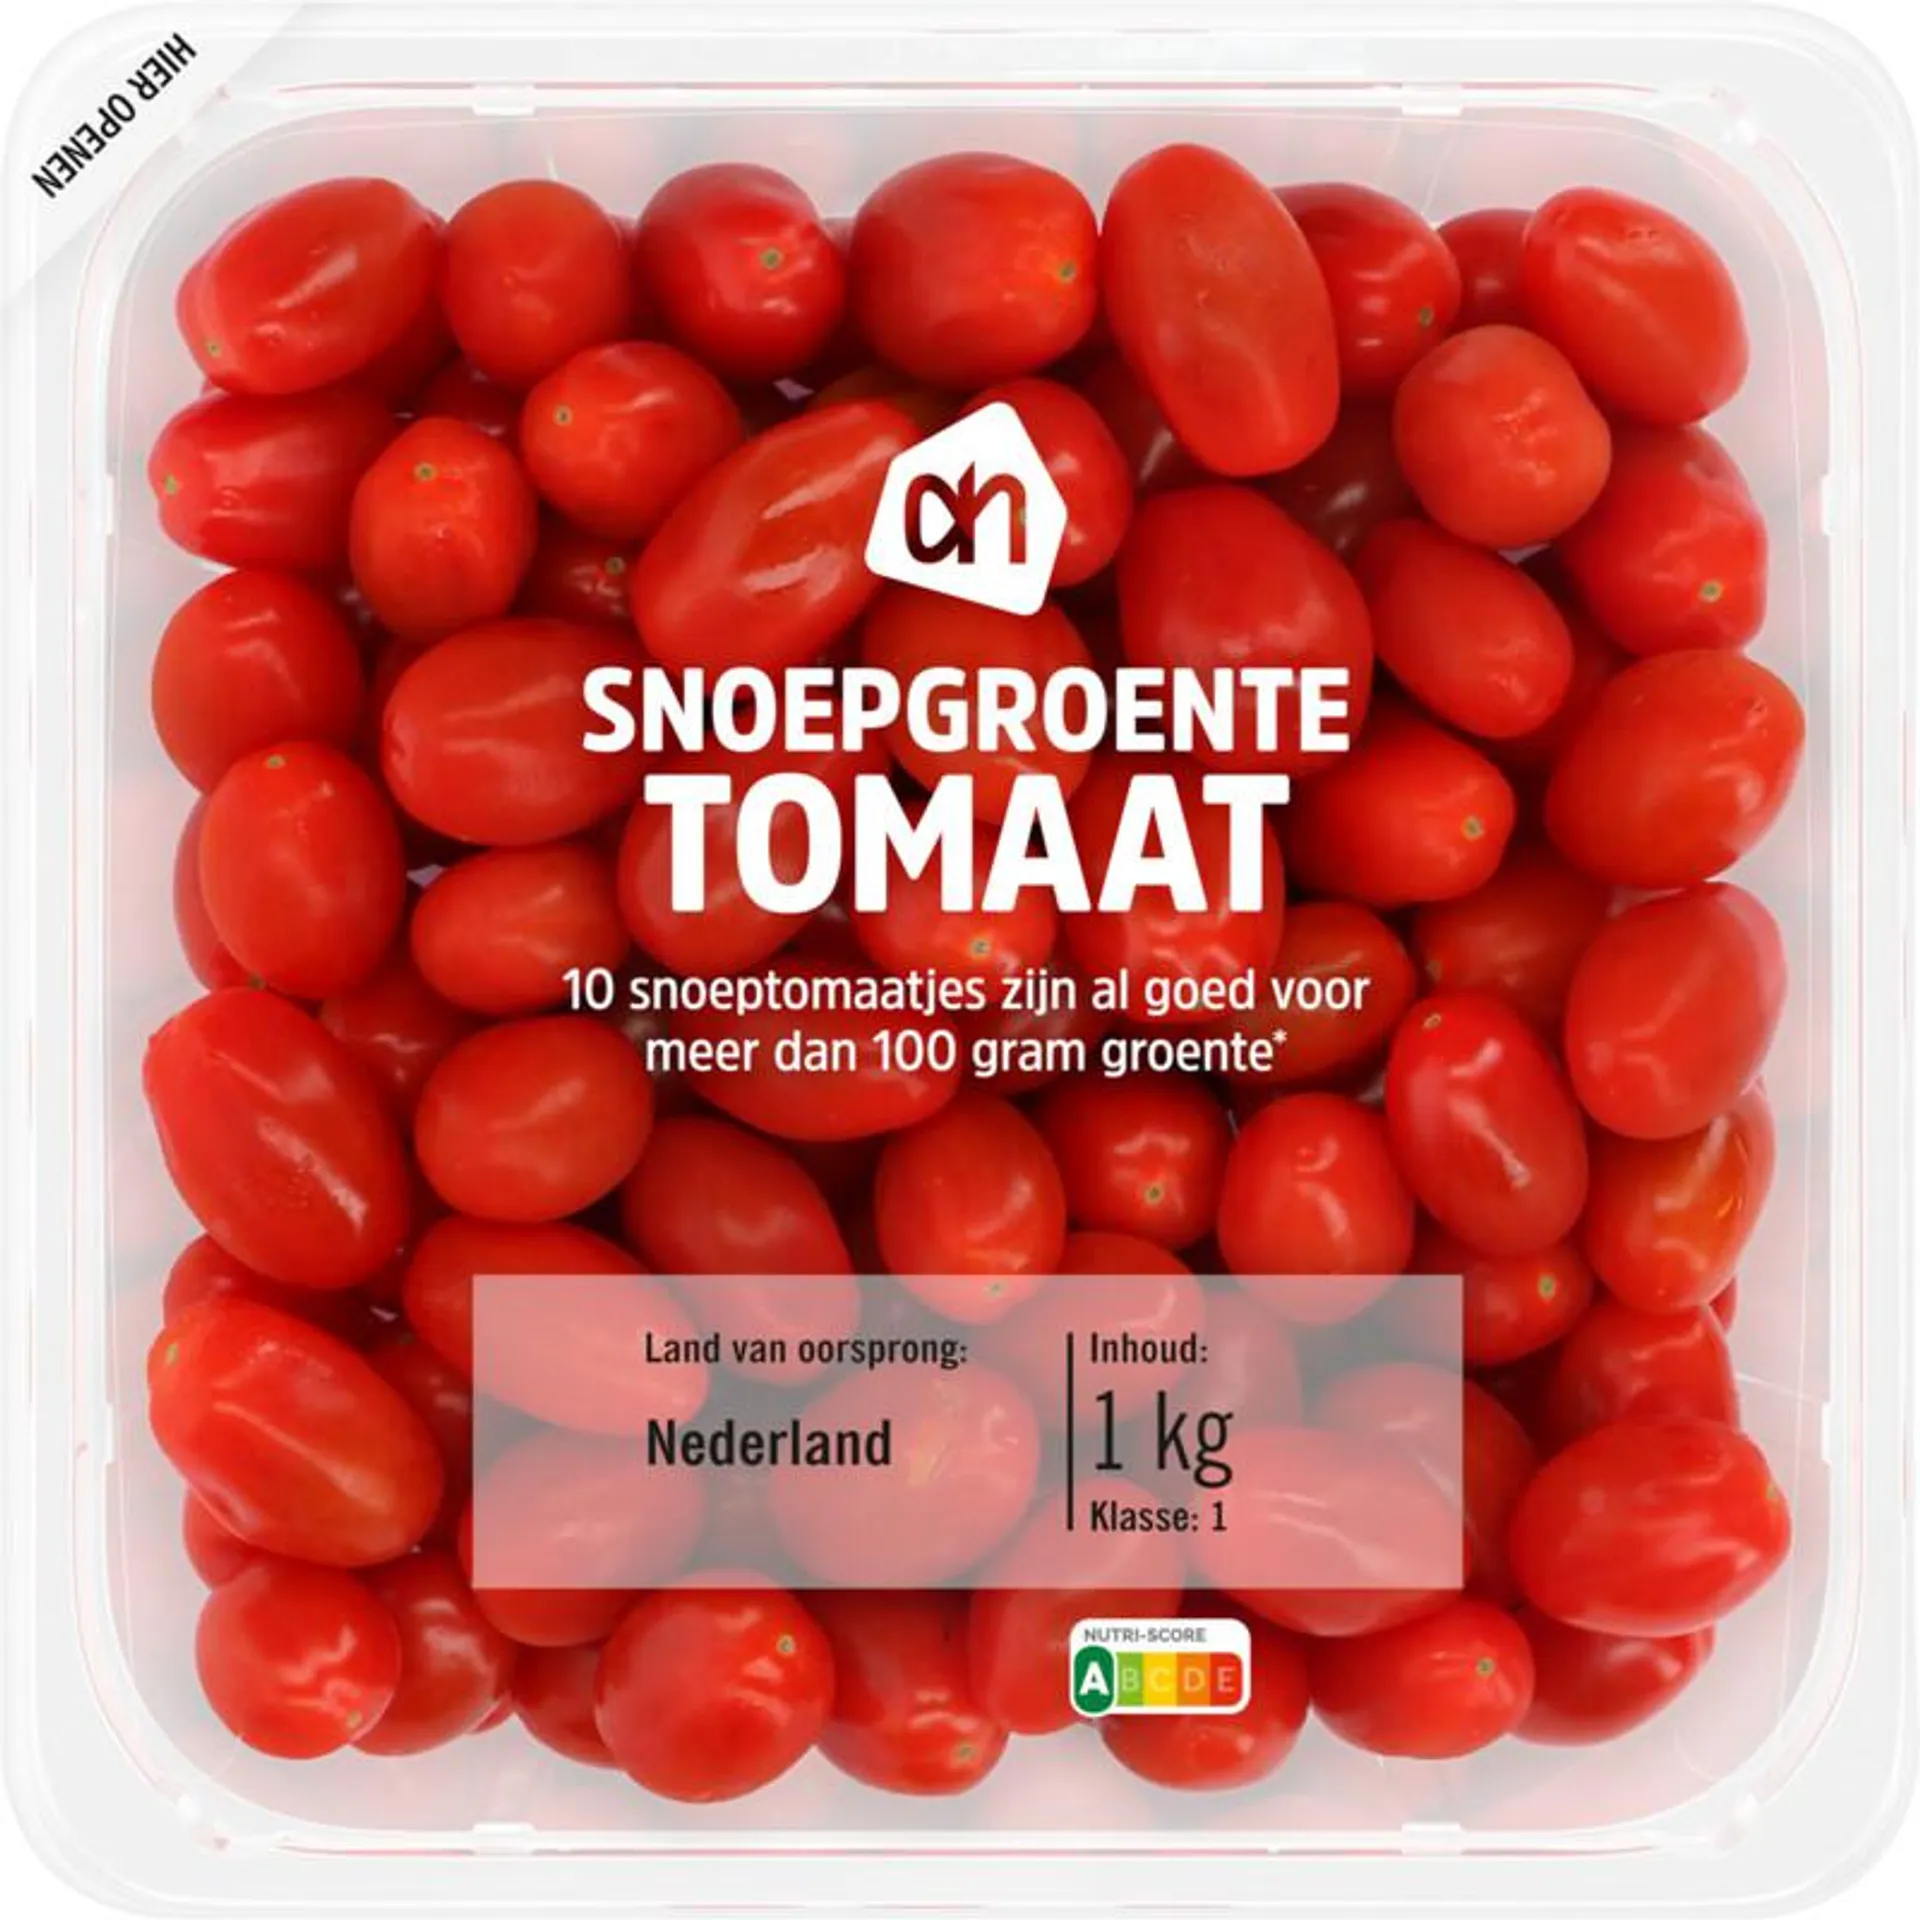 AH Snoepgroente tomaat